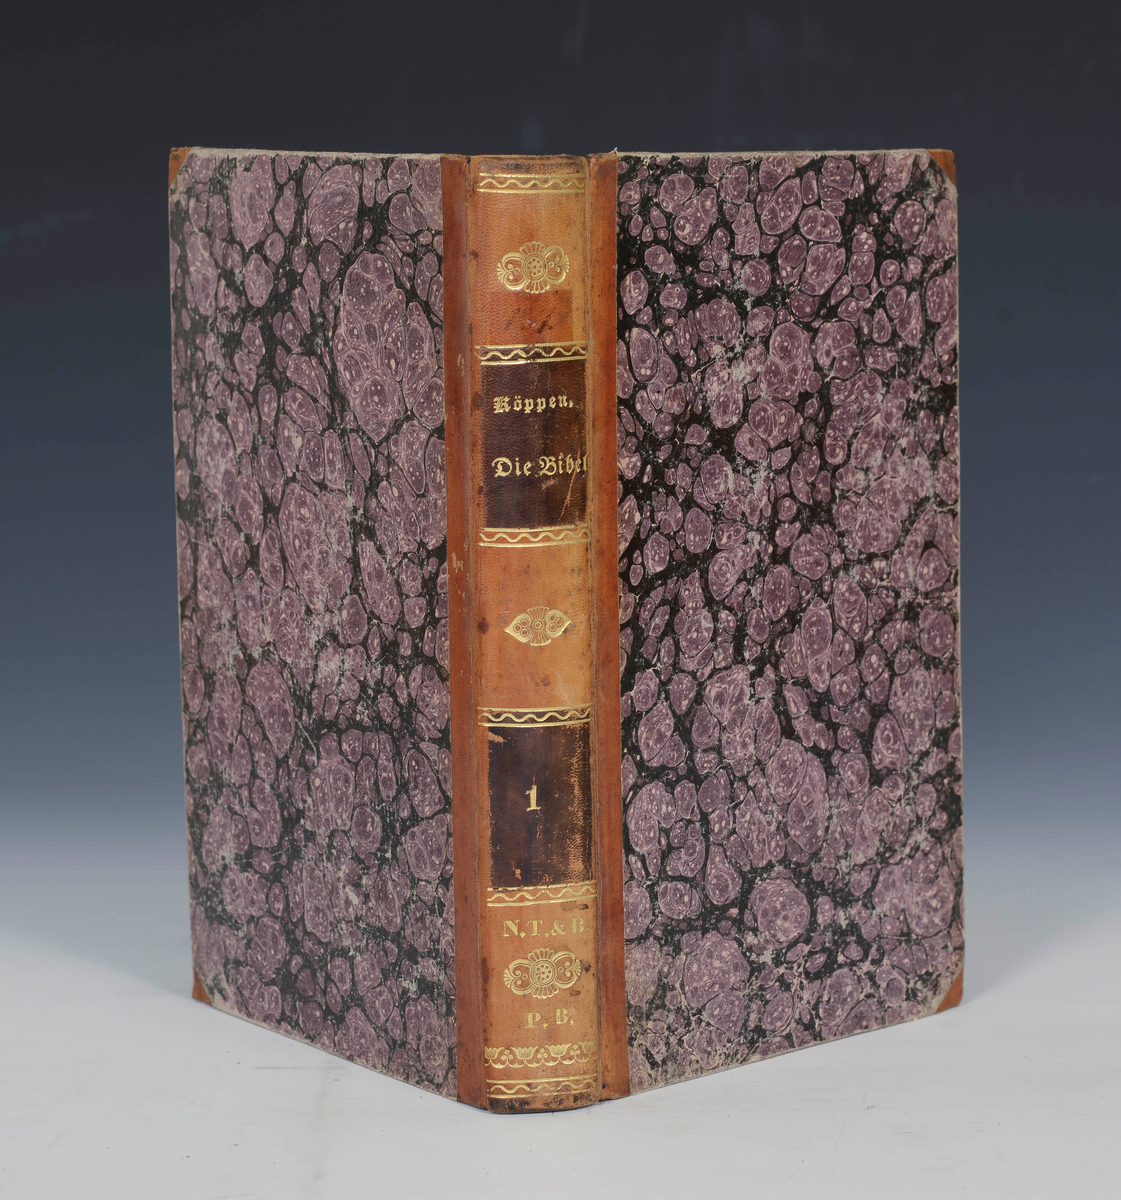 Køppen, Daniel Joachim. Die Bibel ein Werk der Göttlichen Weisheit. Dritte Aufl. I-II
Leipzig 1837

Første bind.